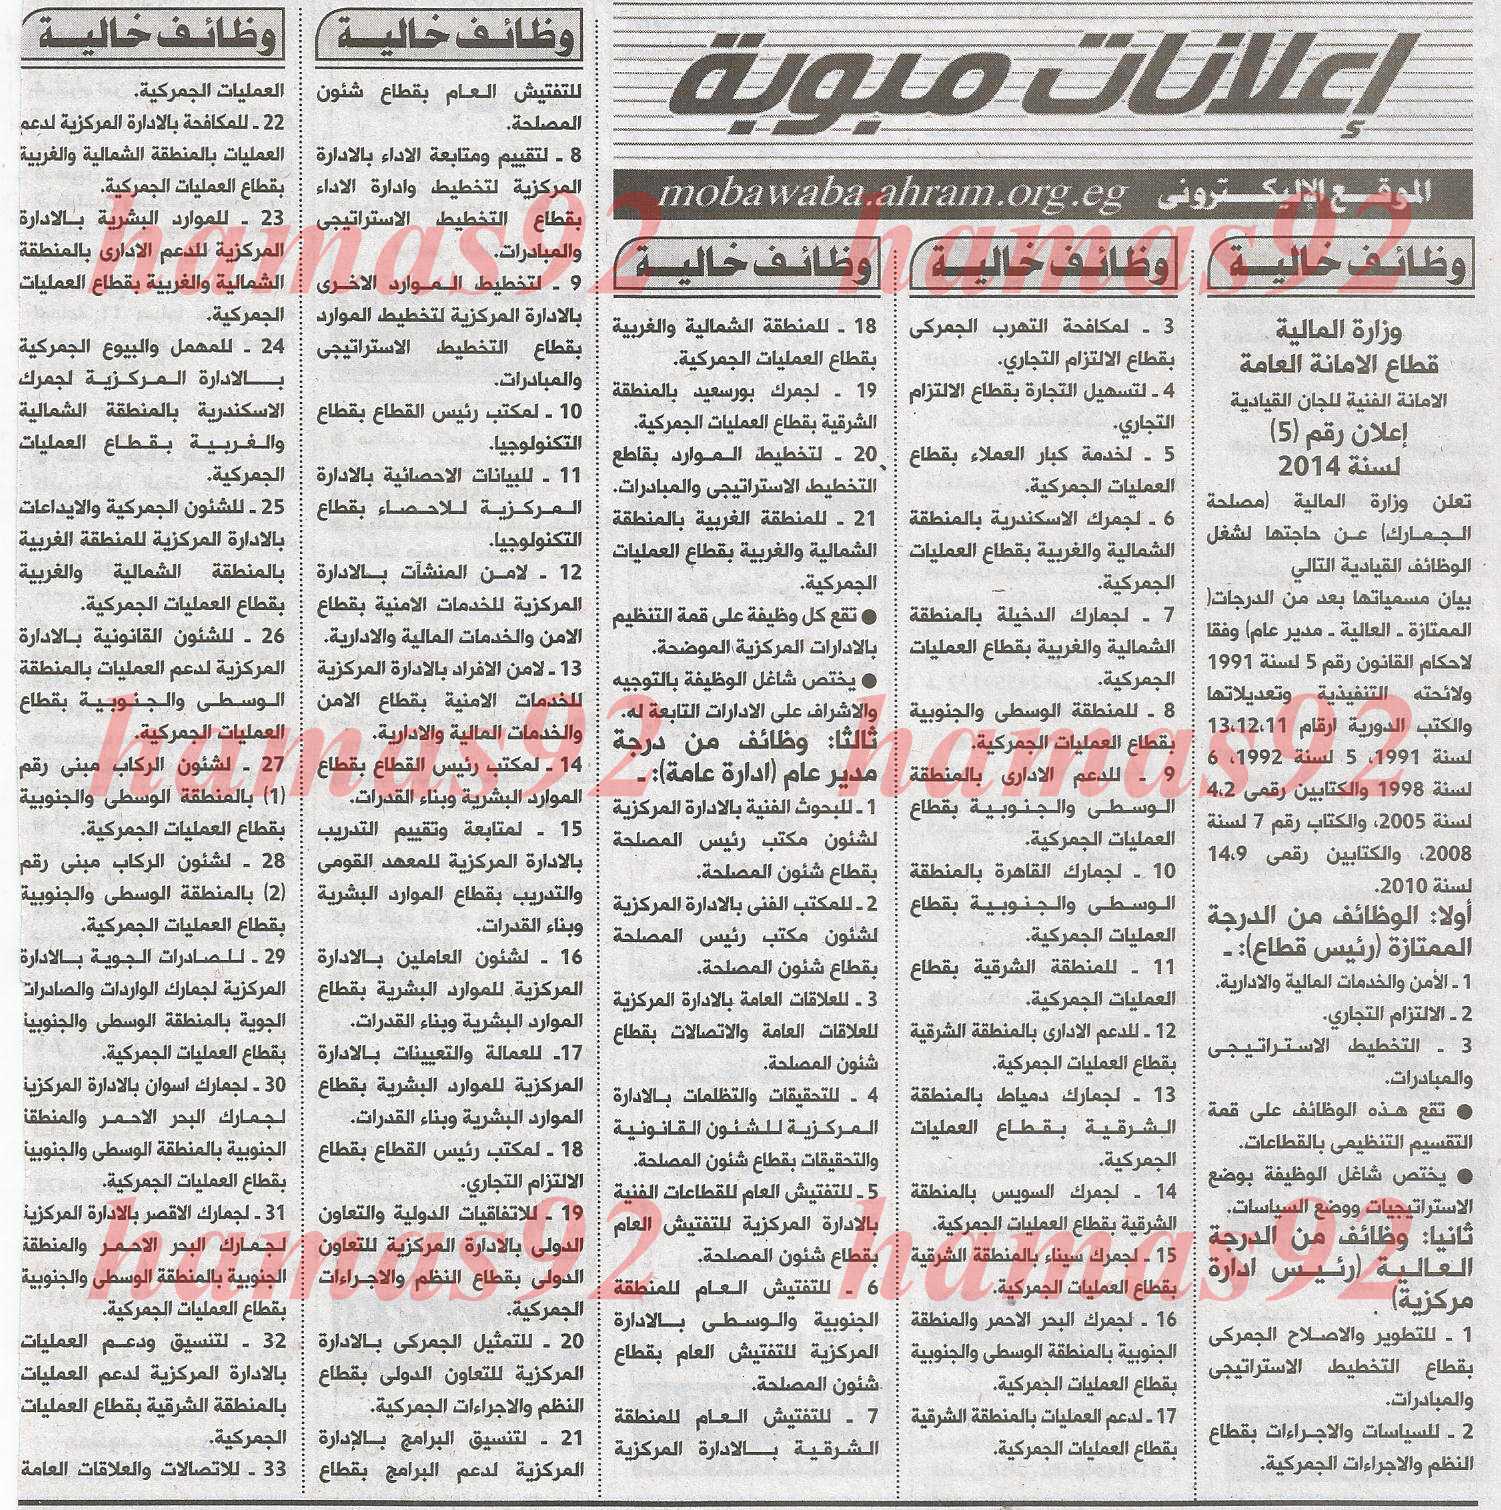 وظائف جريدة الاهرام اليوم السبت 8 -02-2014 , وظائف خالية من جريدة الاهرام 8 فبراير 2014